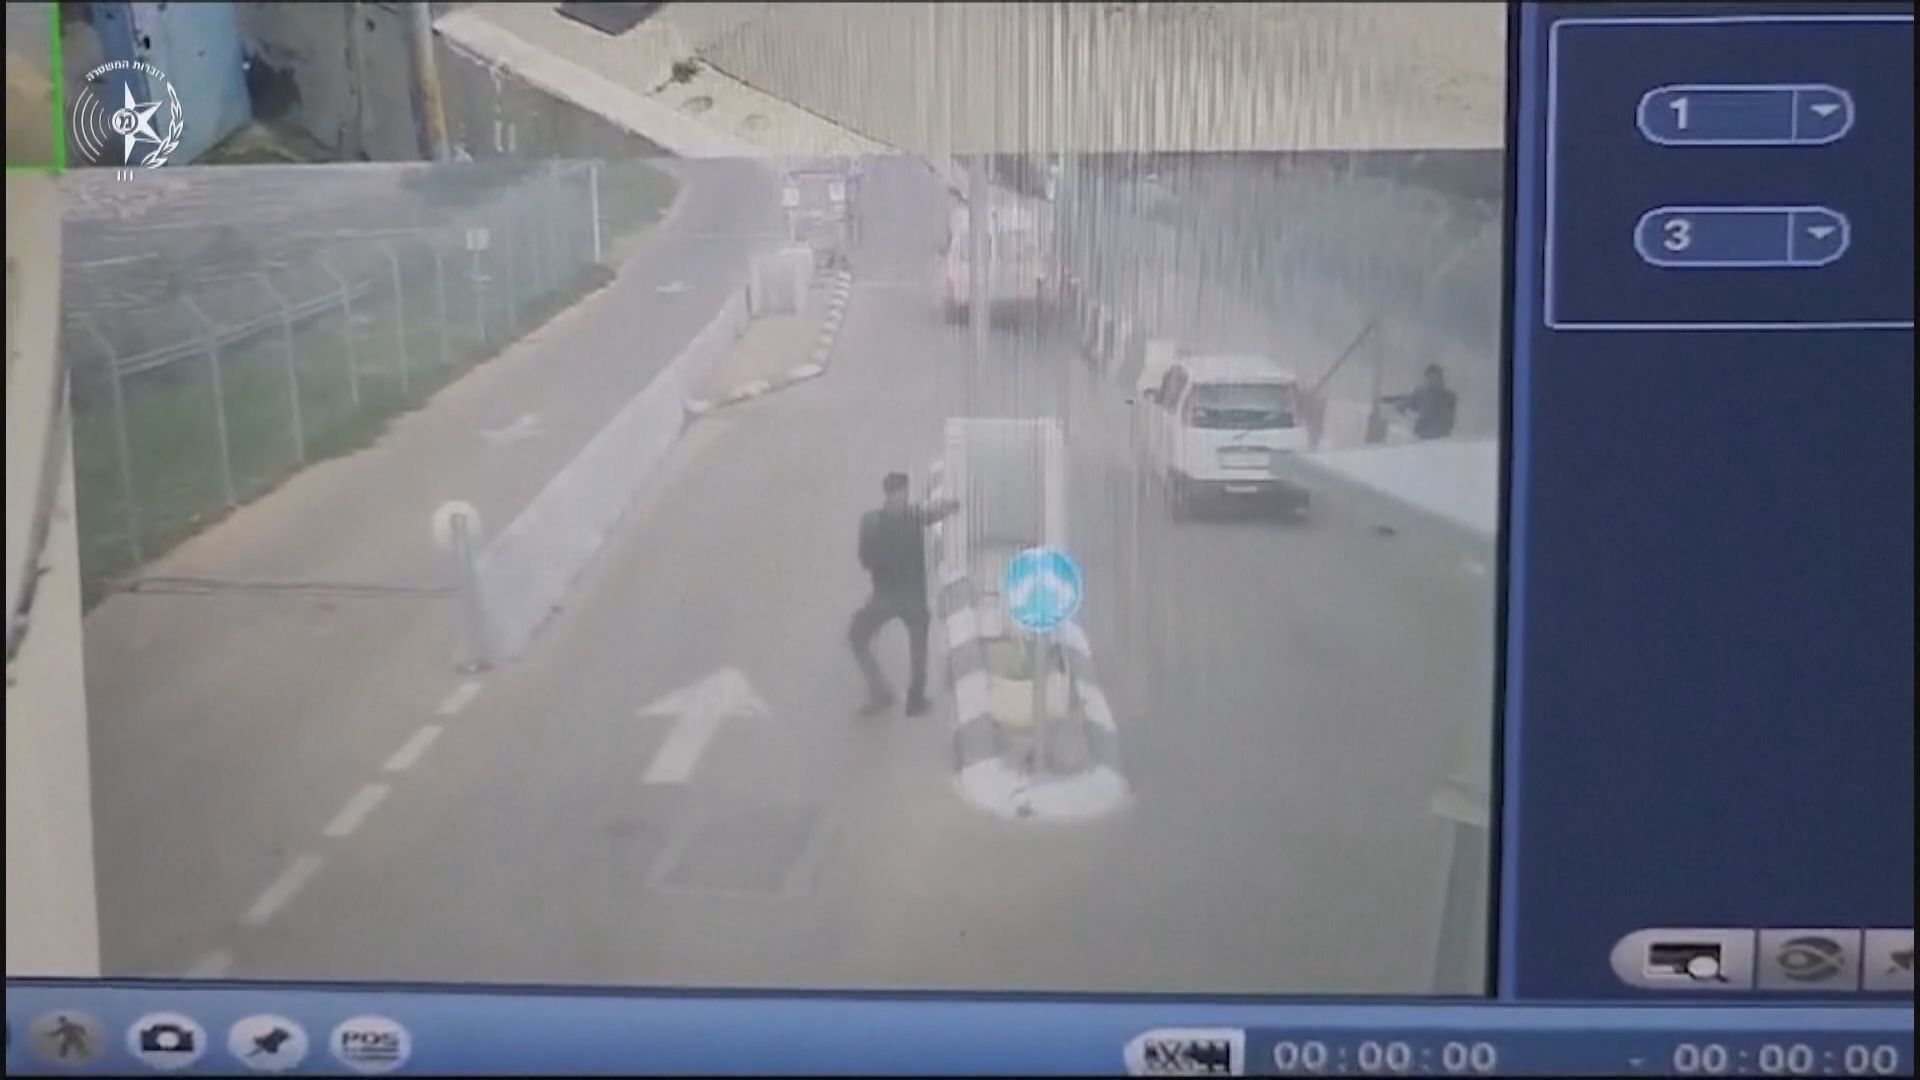 約旦河西岸檢查站有汽車企圖撞向以警 警員開槍擊斃一名女童